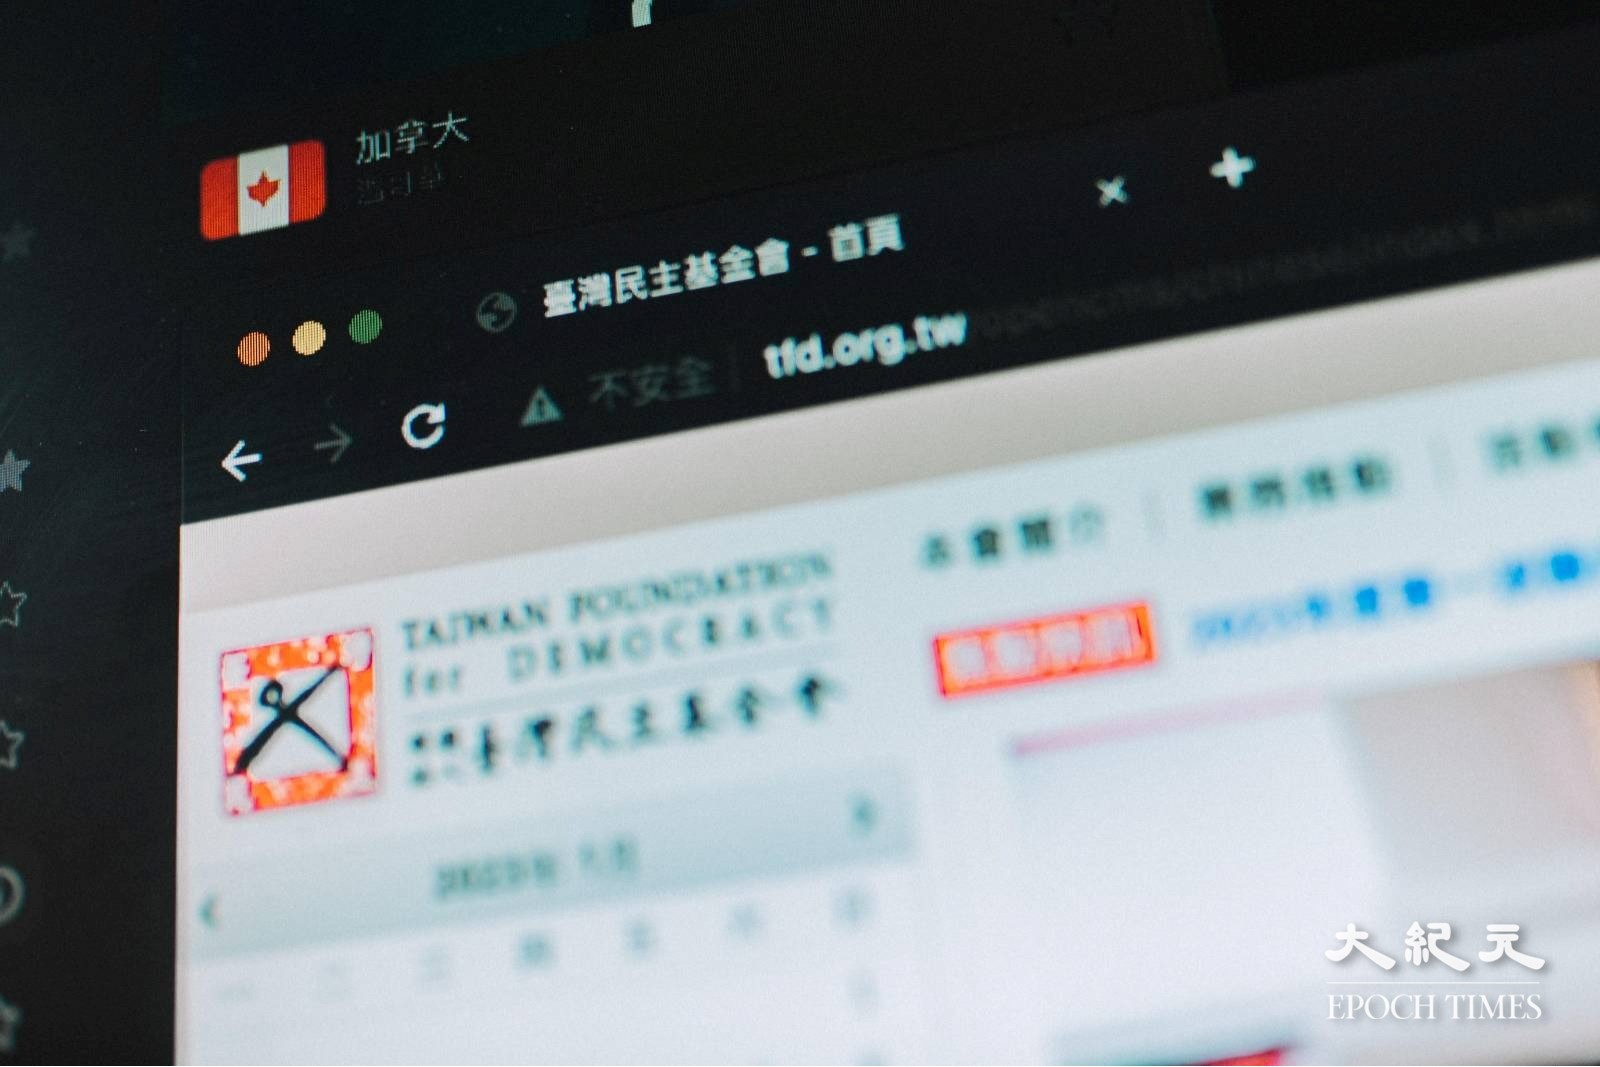 有網民發現，無法從本港網絡登入《臺灣民主季刊》網站，本報記者嘗試以VPN才成功登入。（劉駿軒／大紀元）